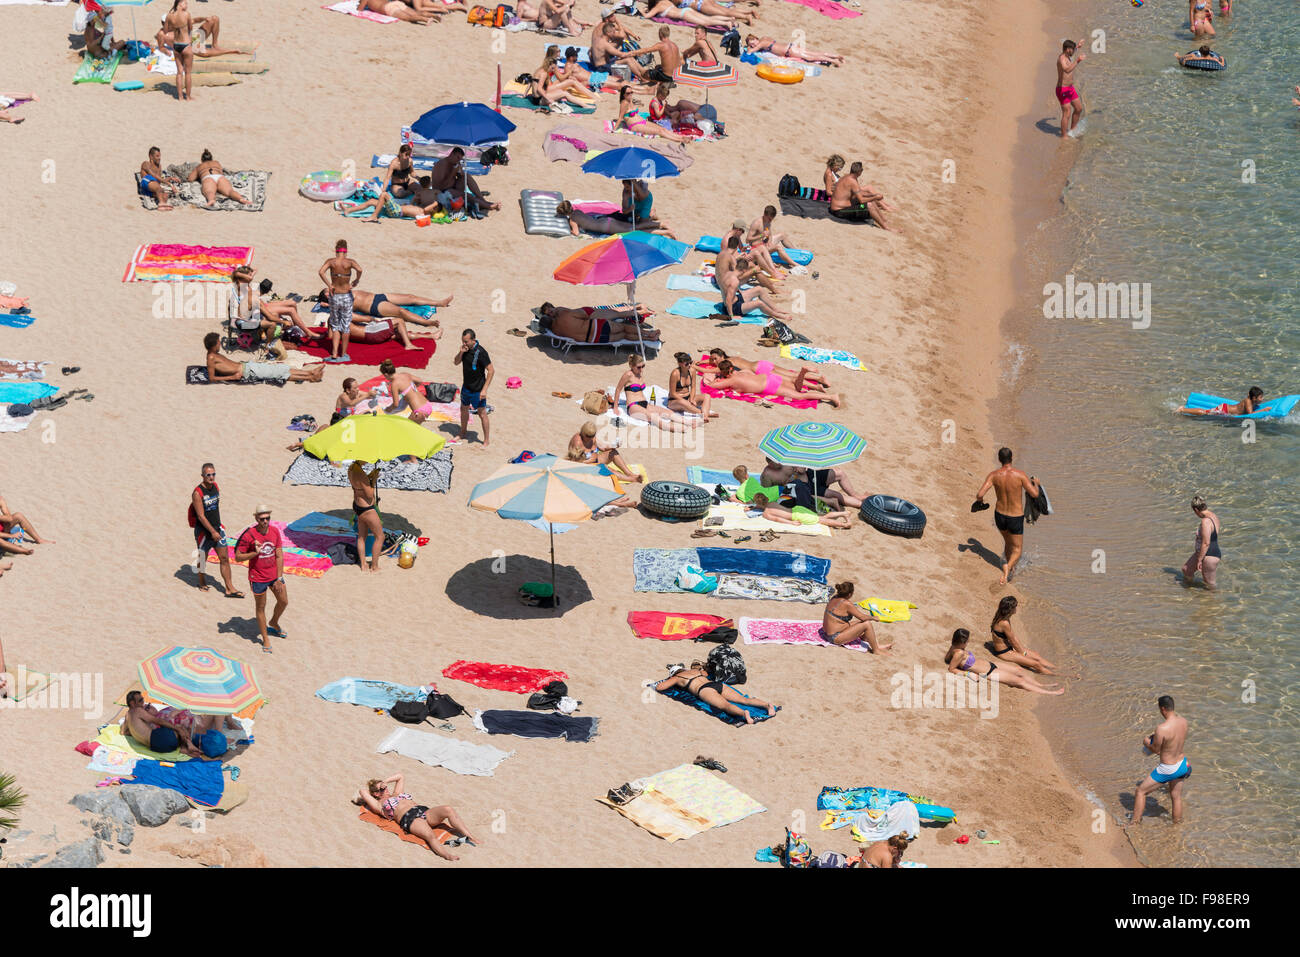 La plage de Lloret de Mar, Lloret de Mar, Costa Brava, province de Gérone, Catalogne, Espagne Banque D'Images